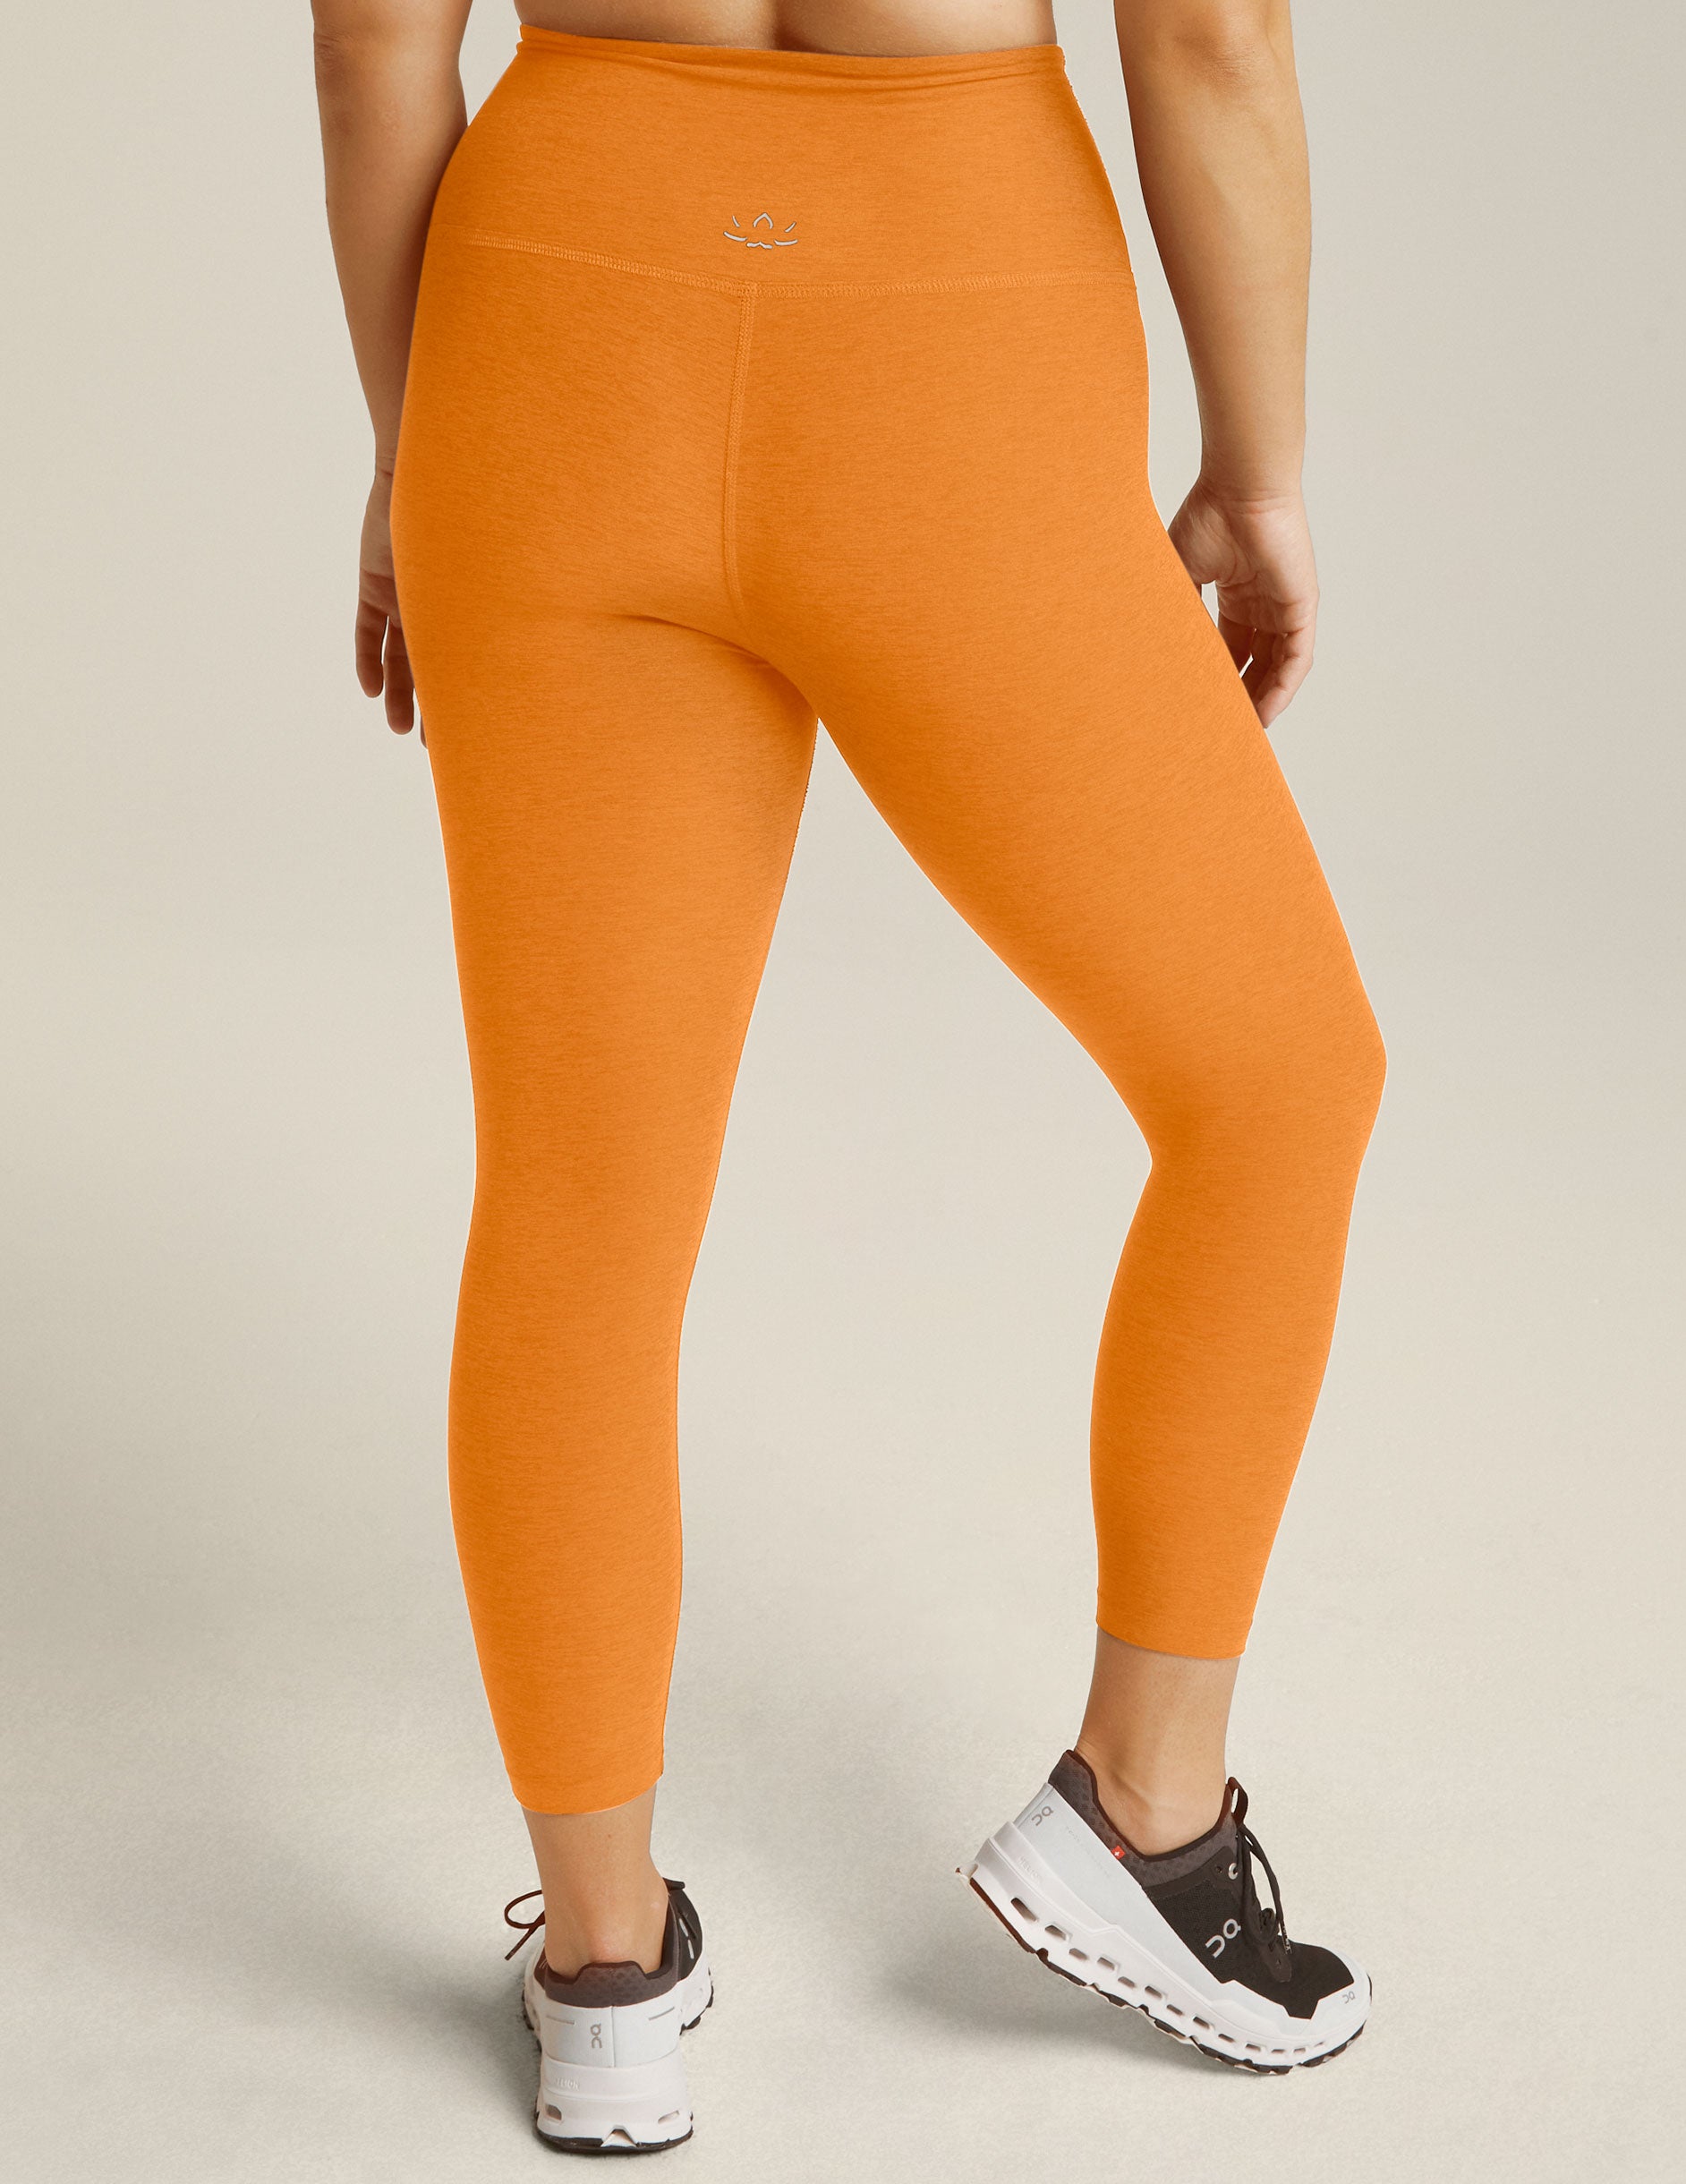 orange high-waisted capri legging